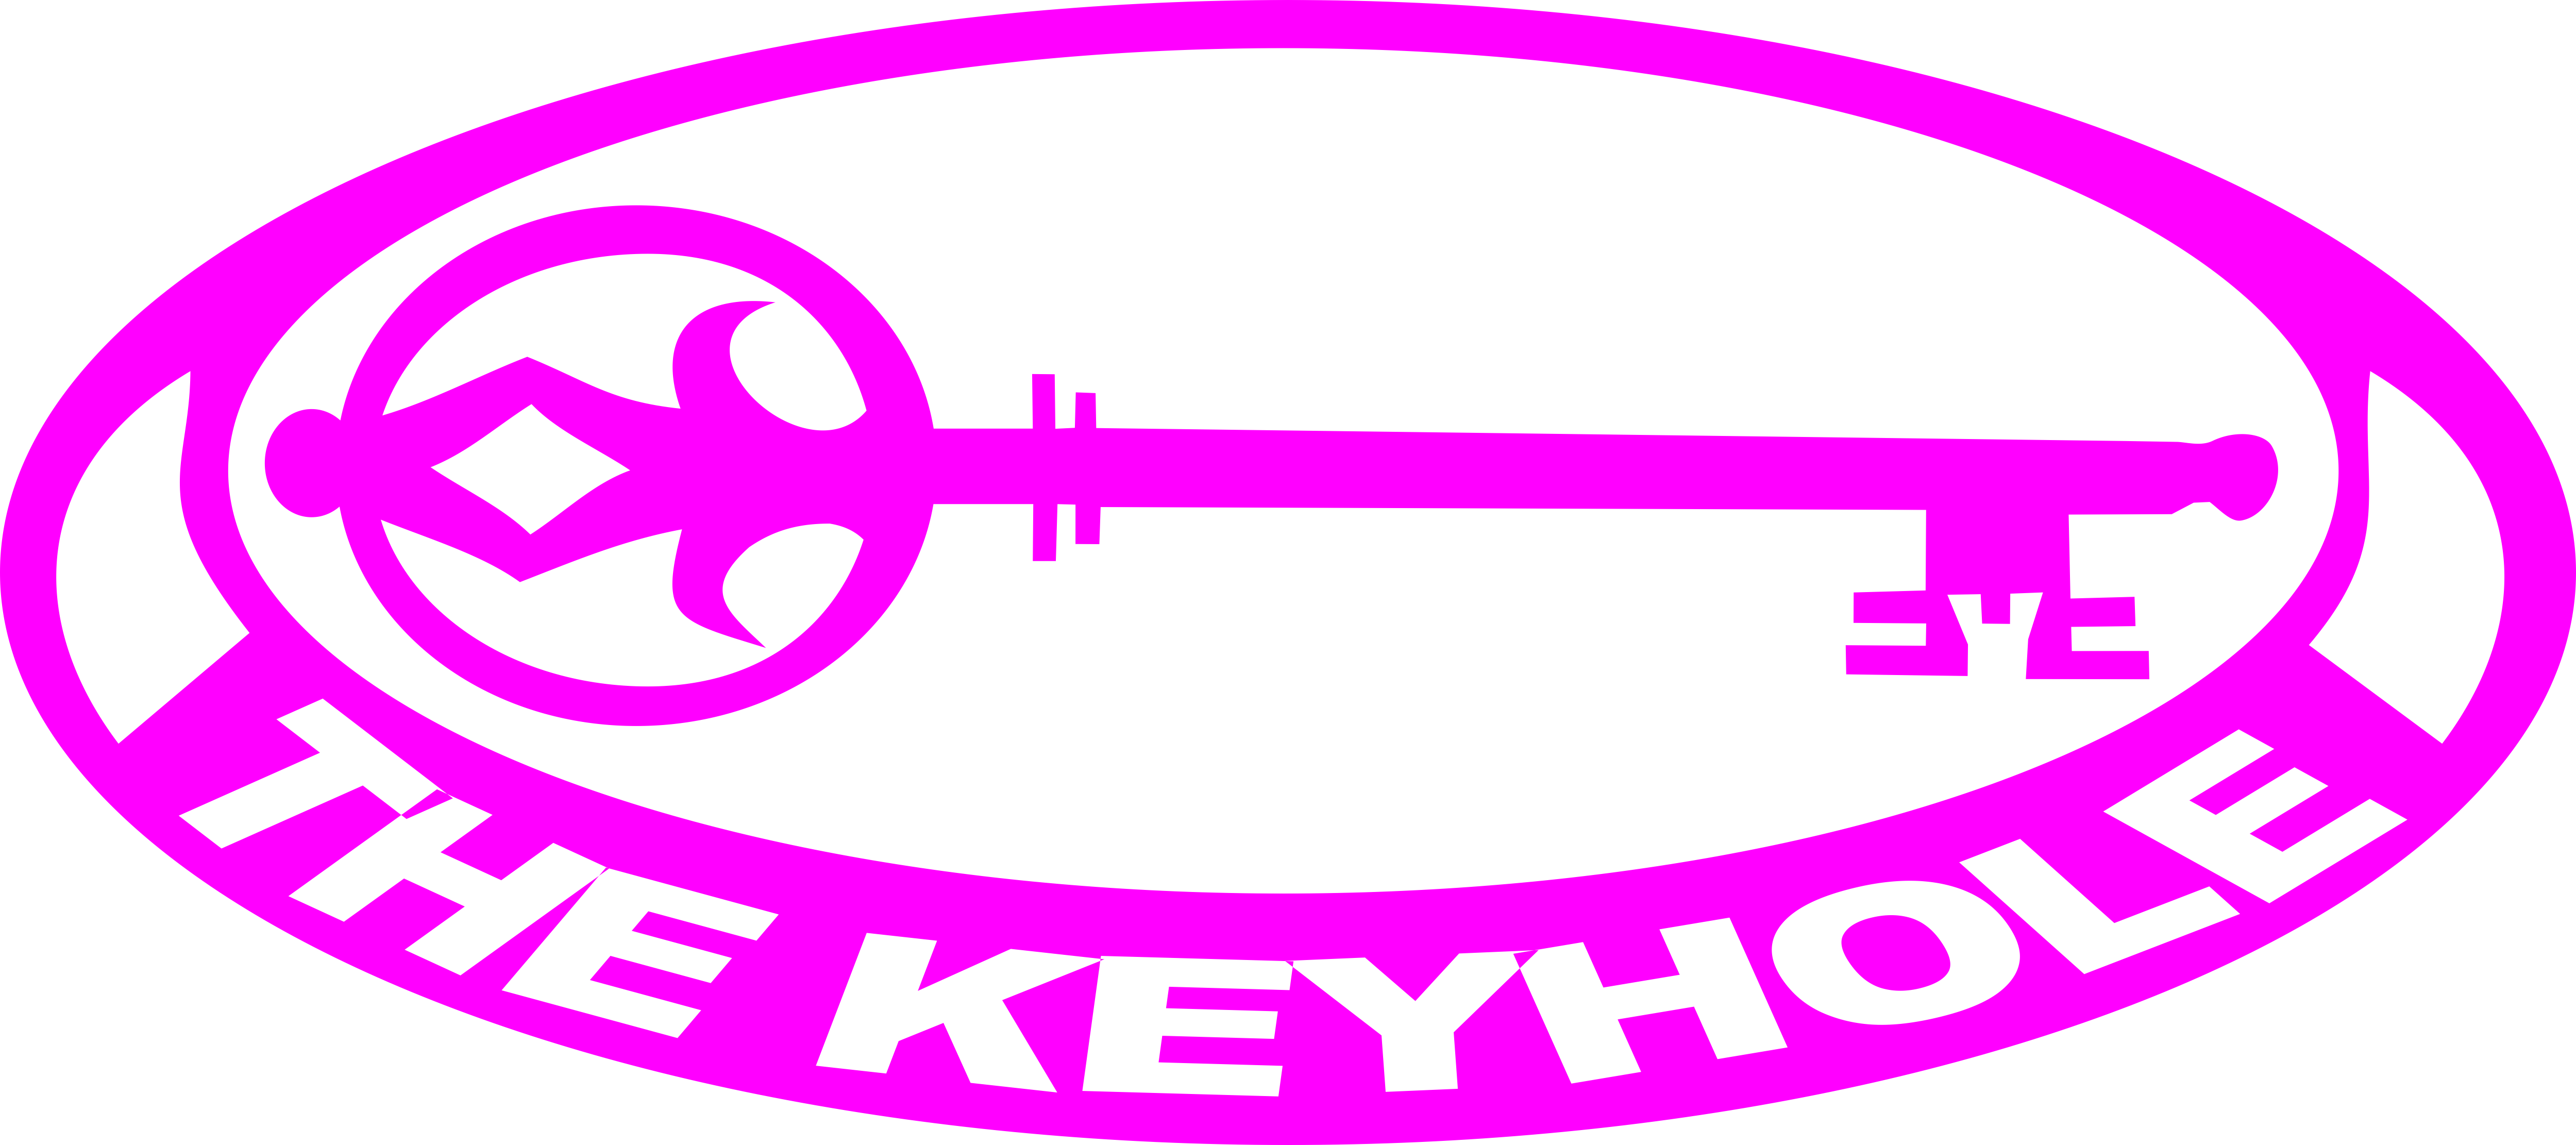 Rustenburg Keyhole CC (Unverified) logo